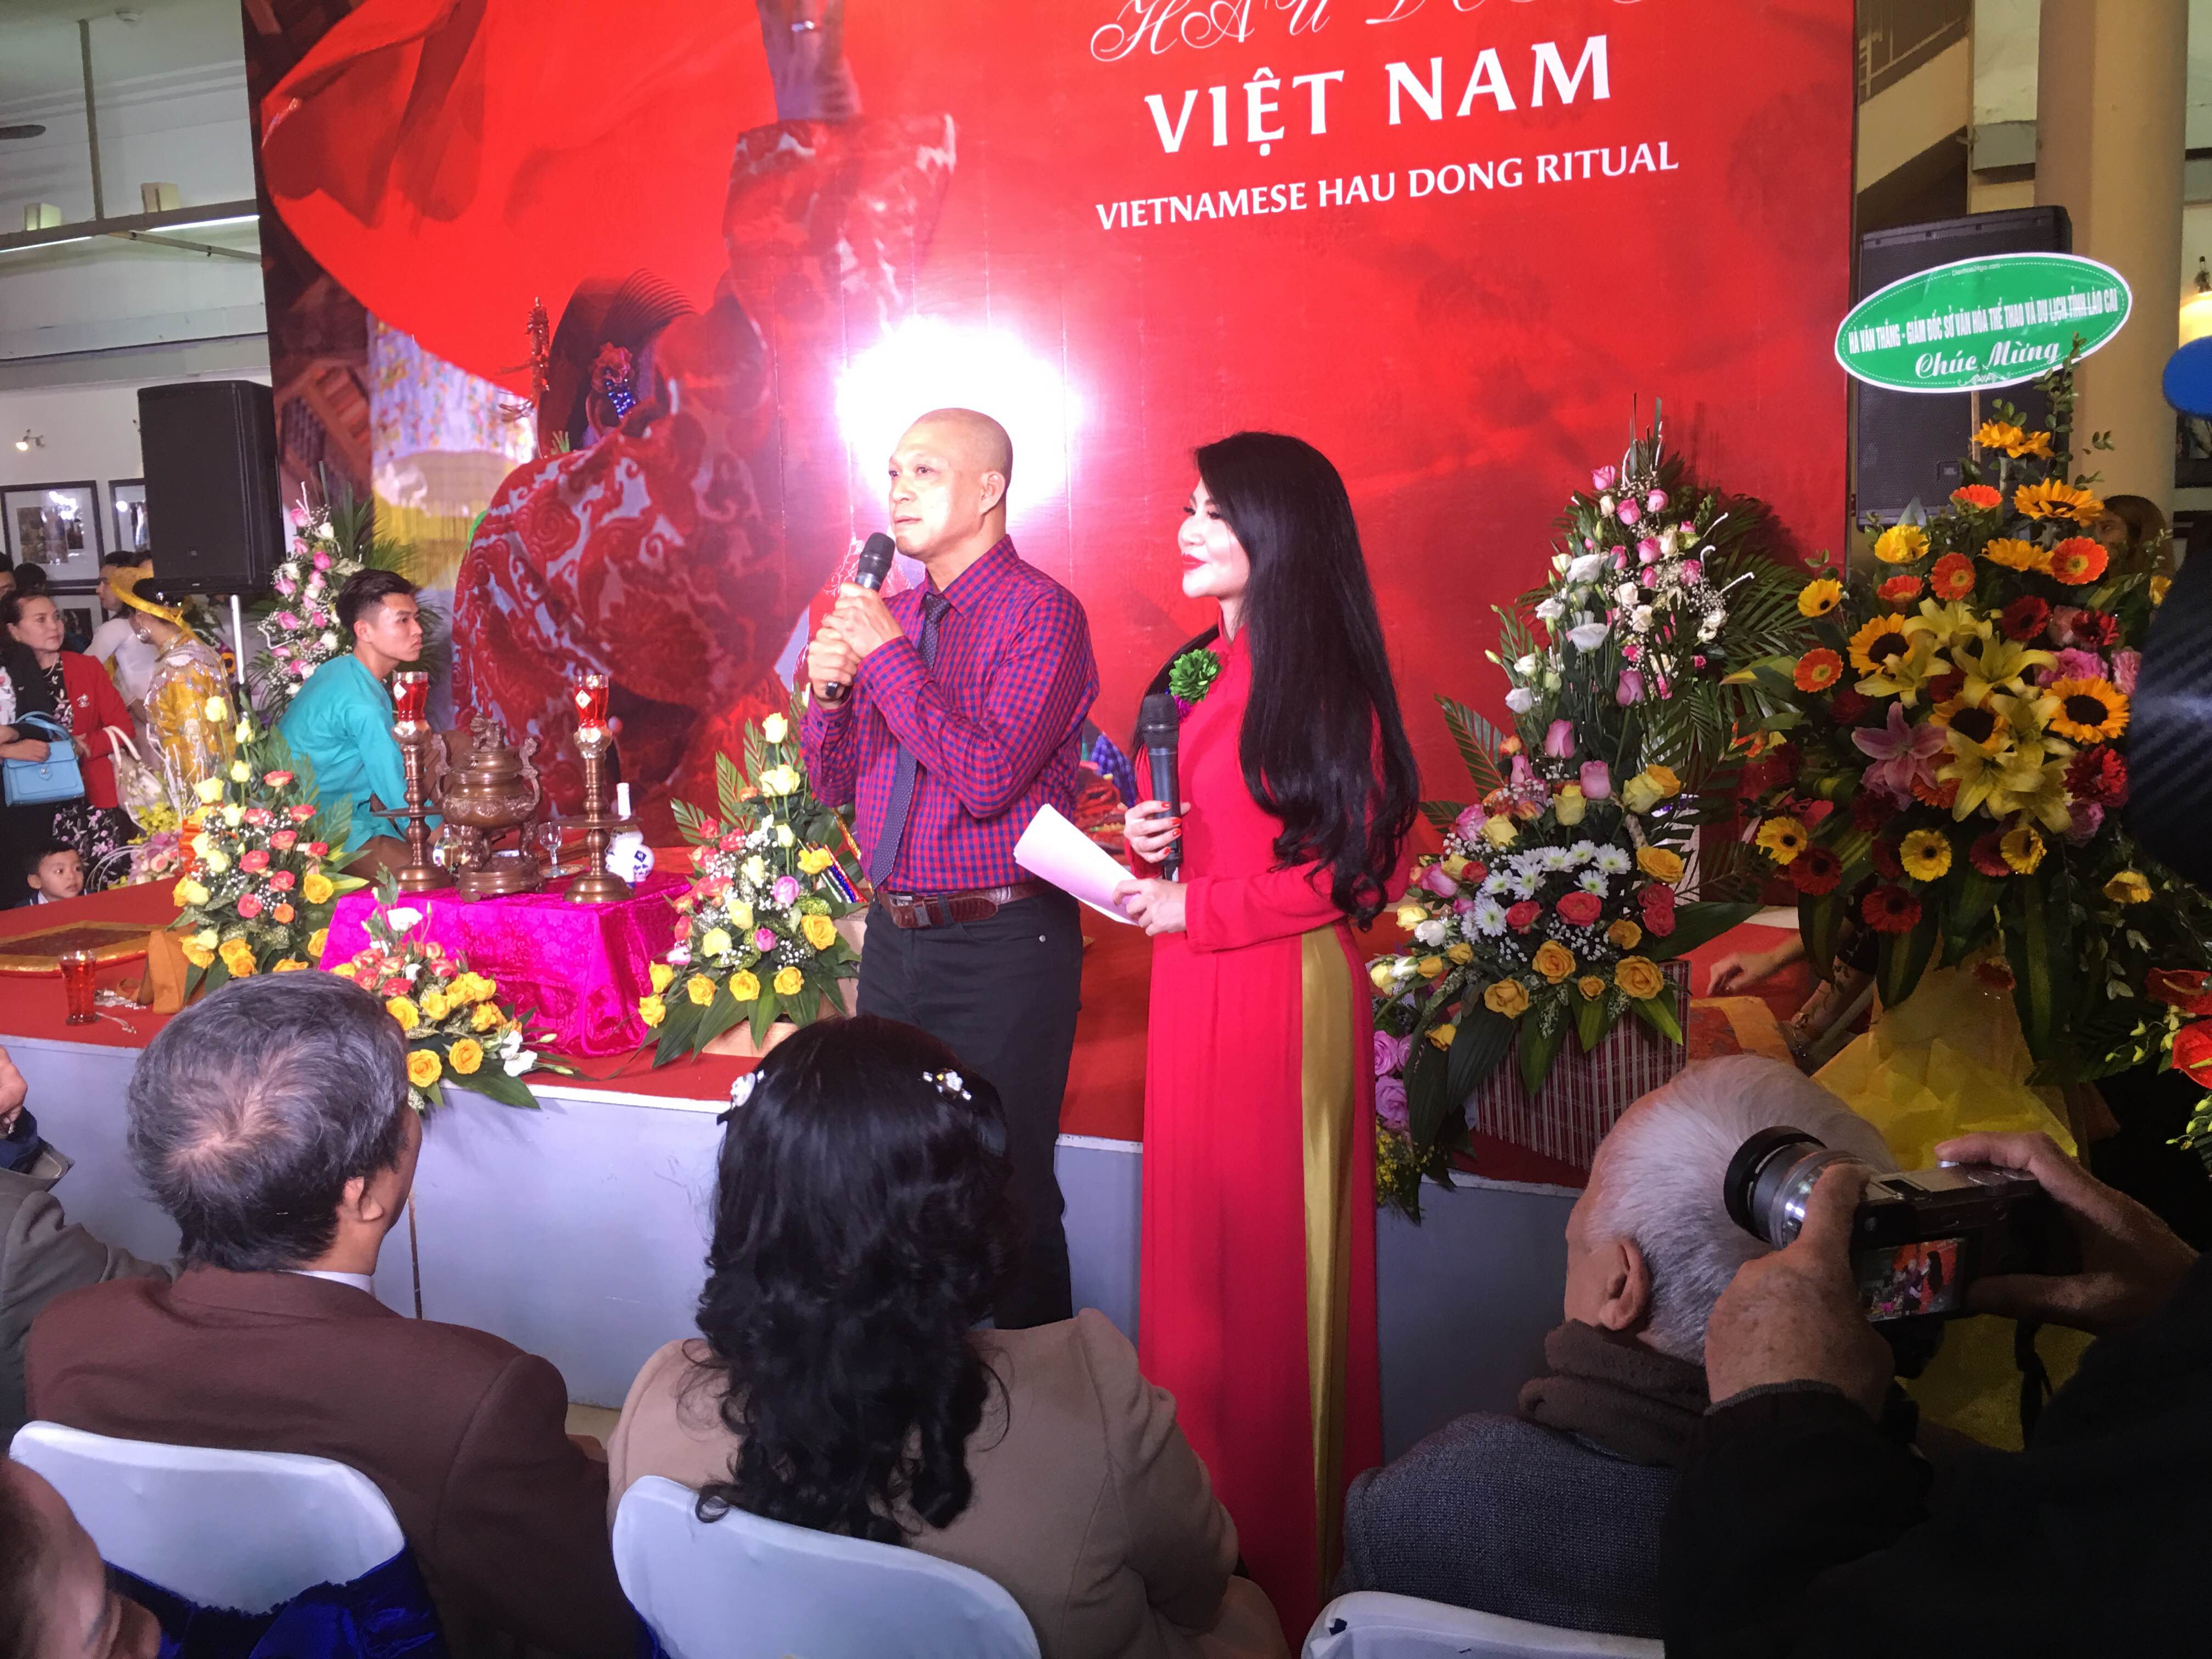 Triển lãm ảnh Hầu đồng Việt Nam tại Hà Nội